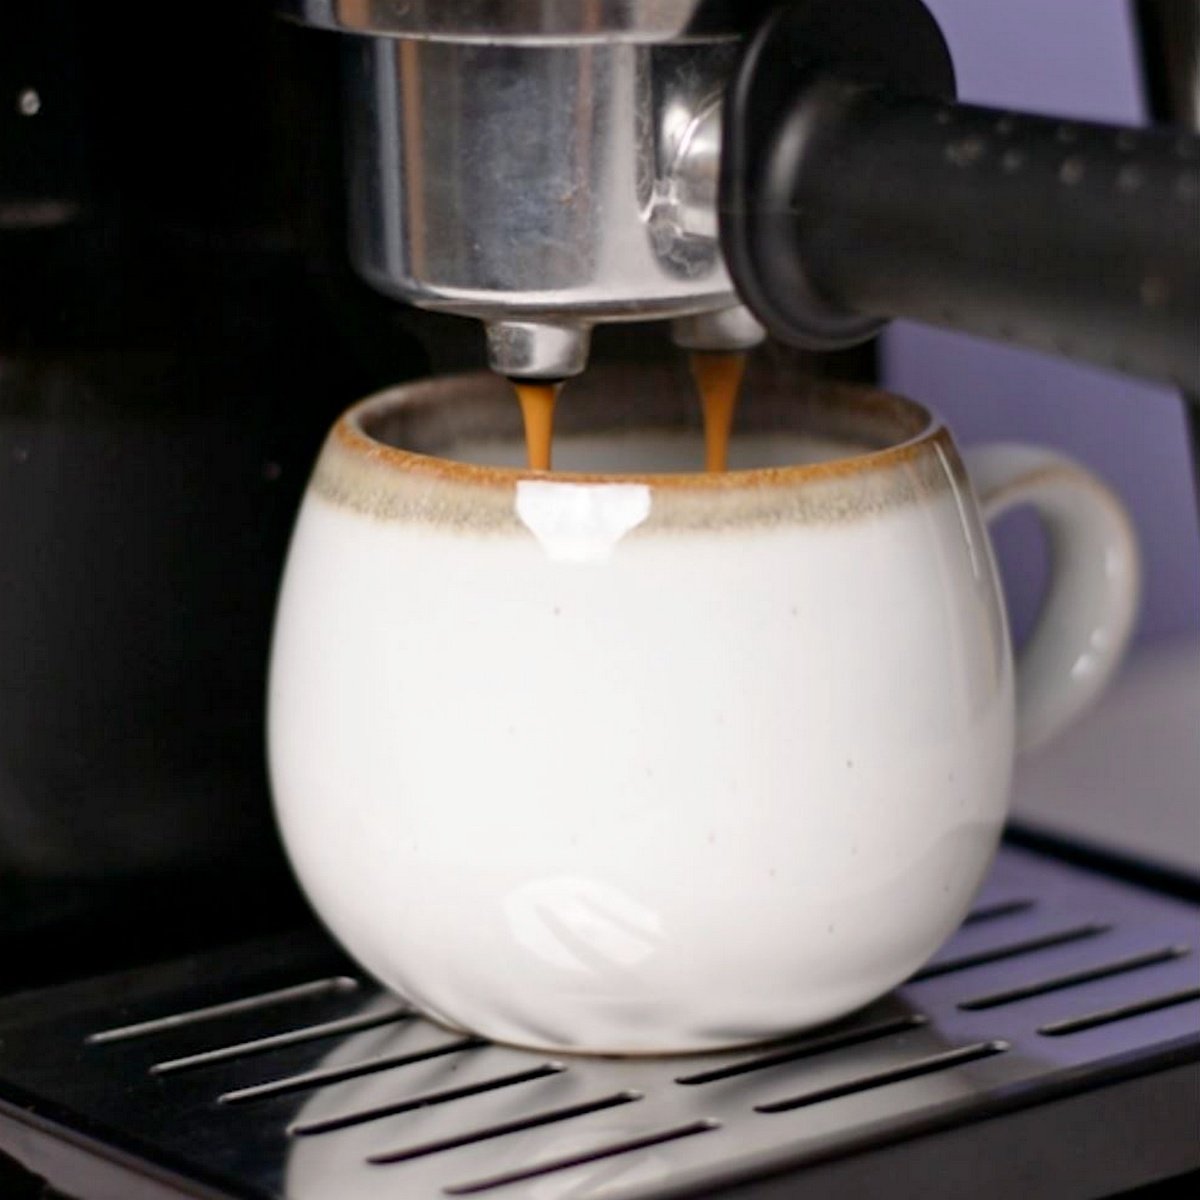 Cup under espresso maker while espresso brews into cup.